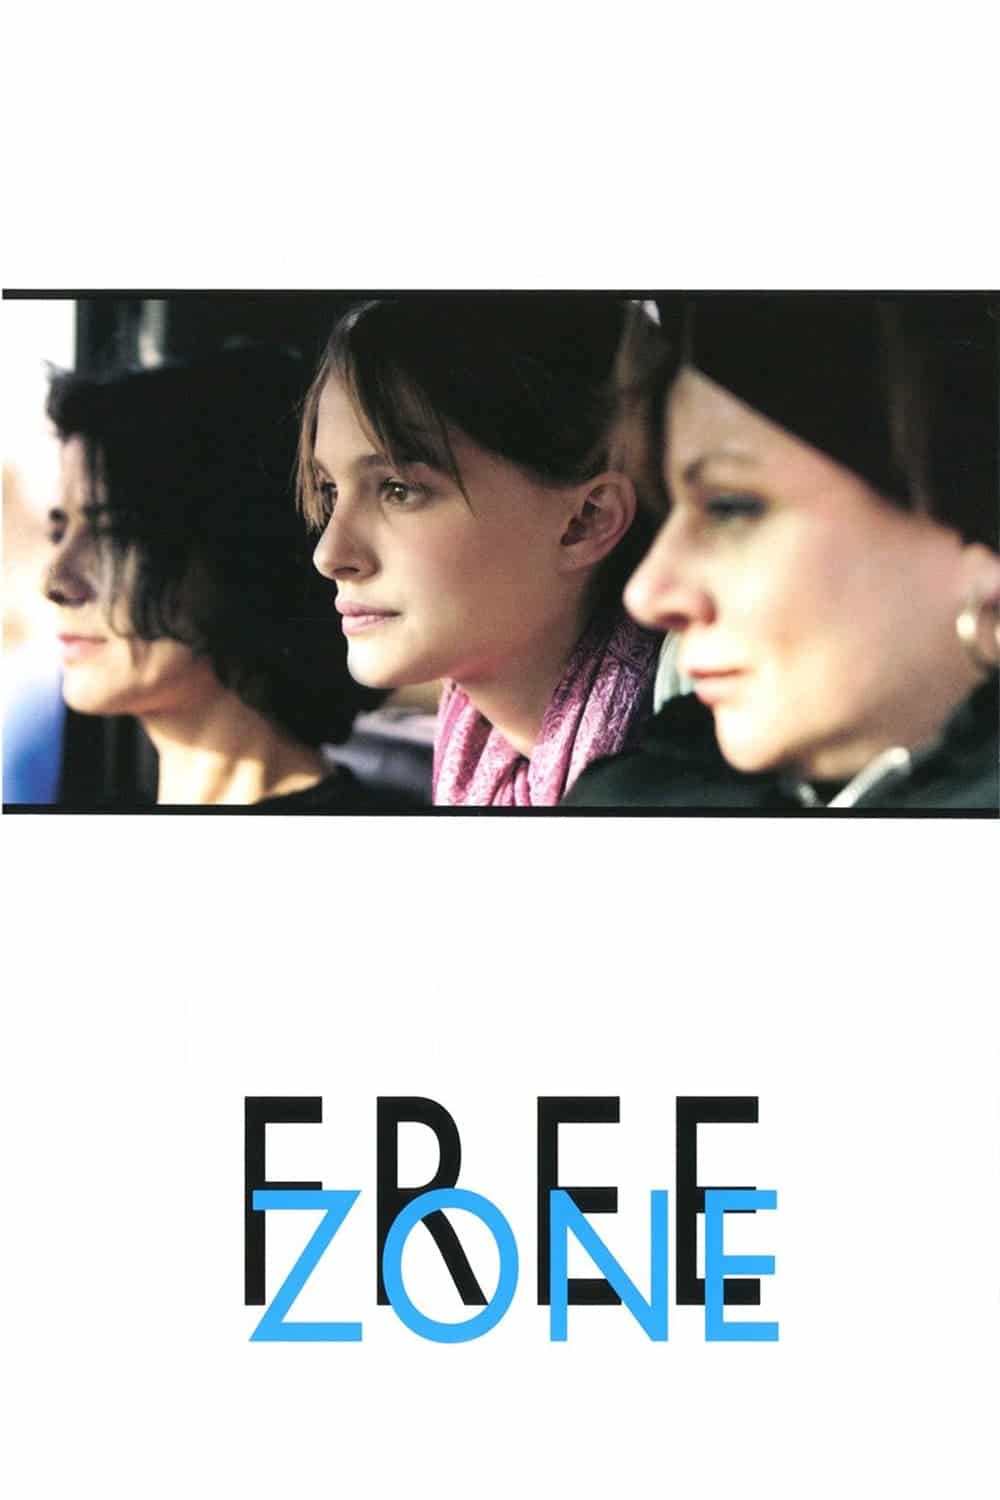 Plakat von "Free Zone"